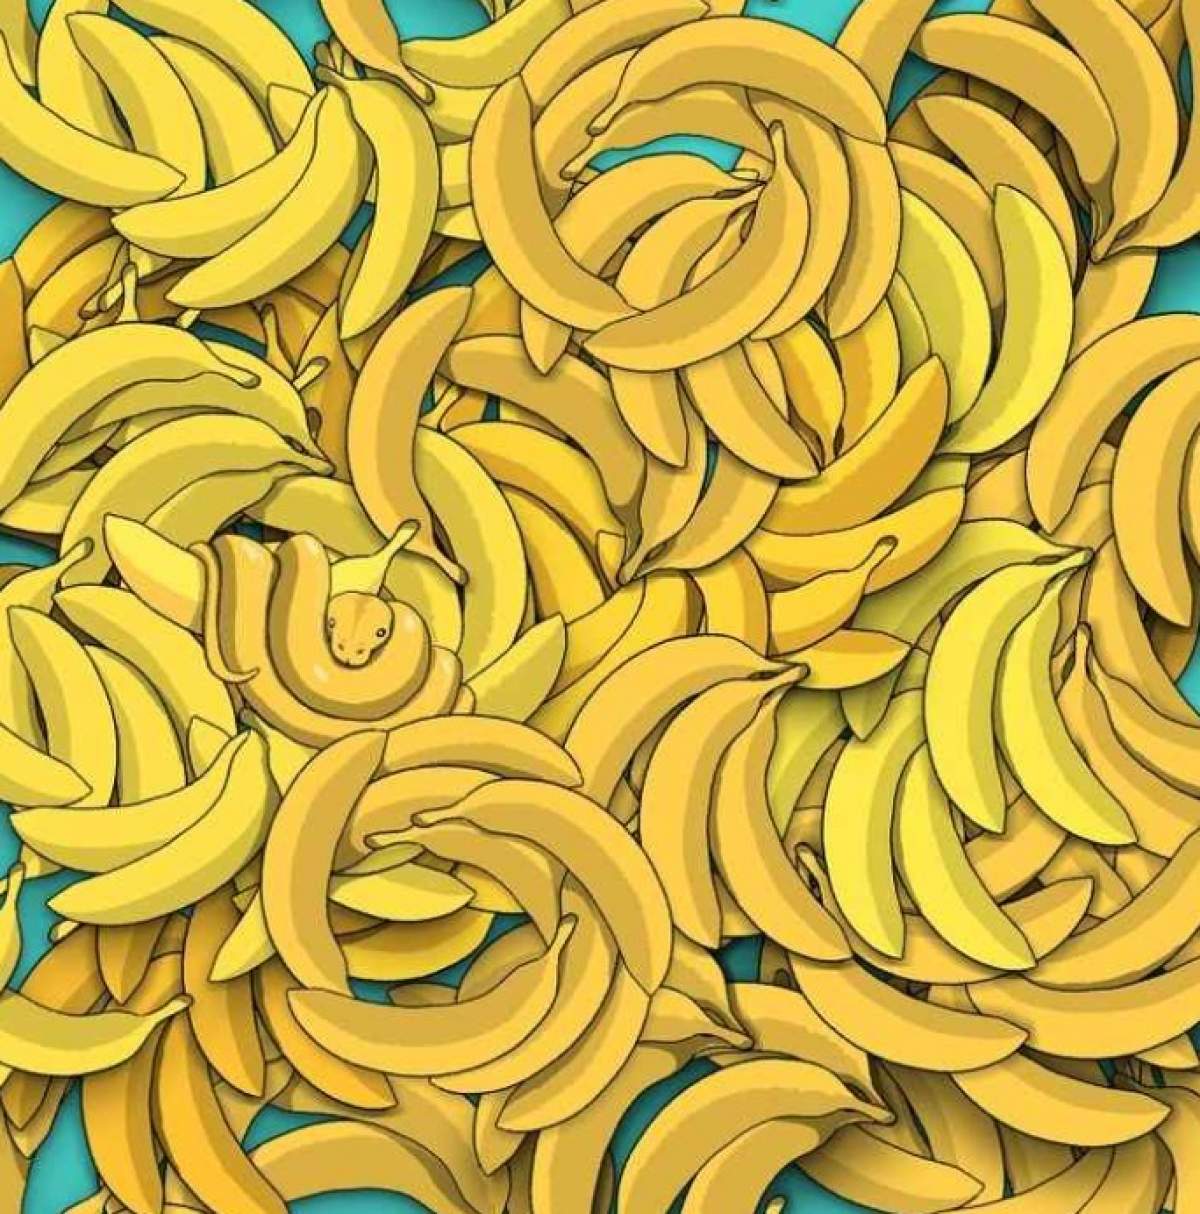 Test IQ iluzie optică! Identifică șarpele ascuns printre bananele din imagine. Ai la dispoziție 5 secunde / FOTO